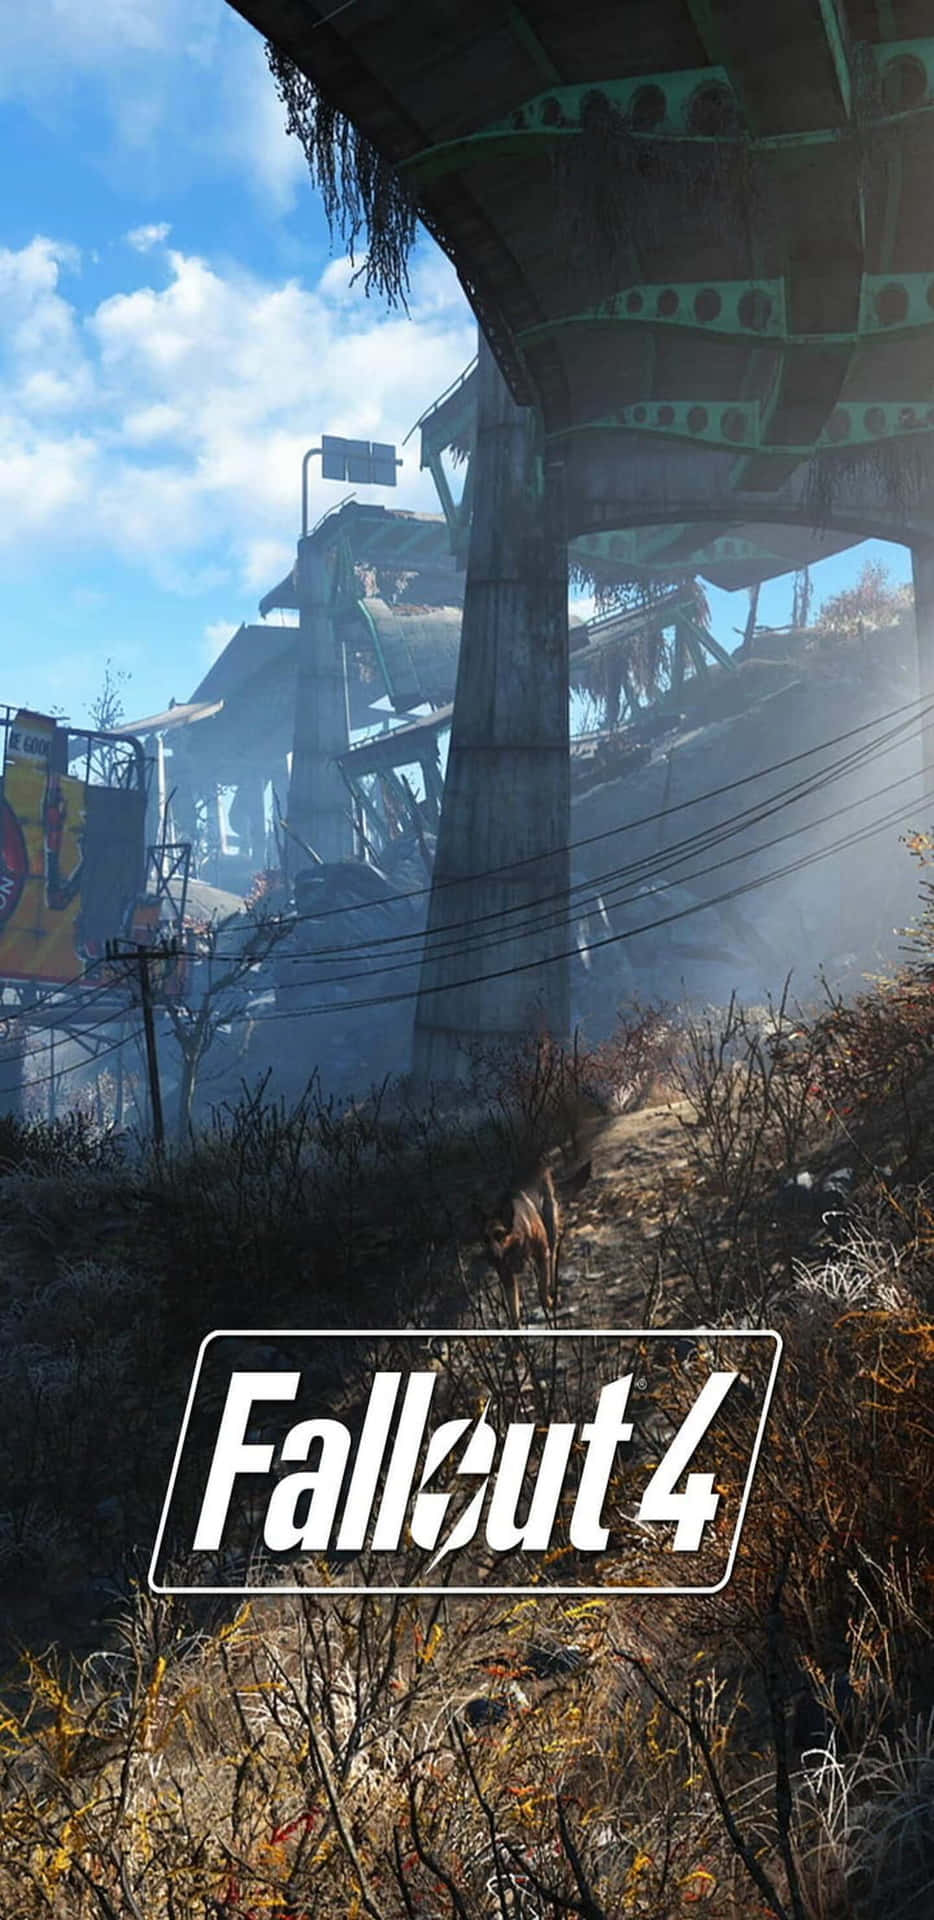 Utforskaden Postapokalyptiska Världen I Fallout 76 På Din Pixel 3xl Genom Att Ladda Ner Bakgrundsbilden.